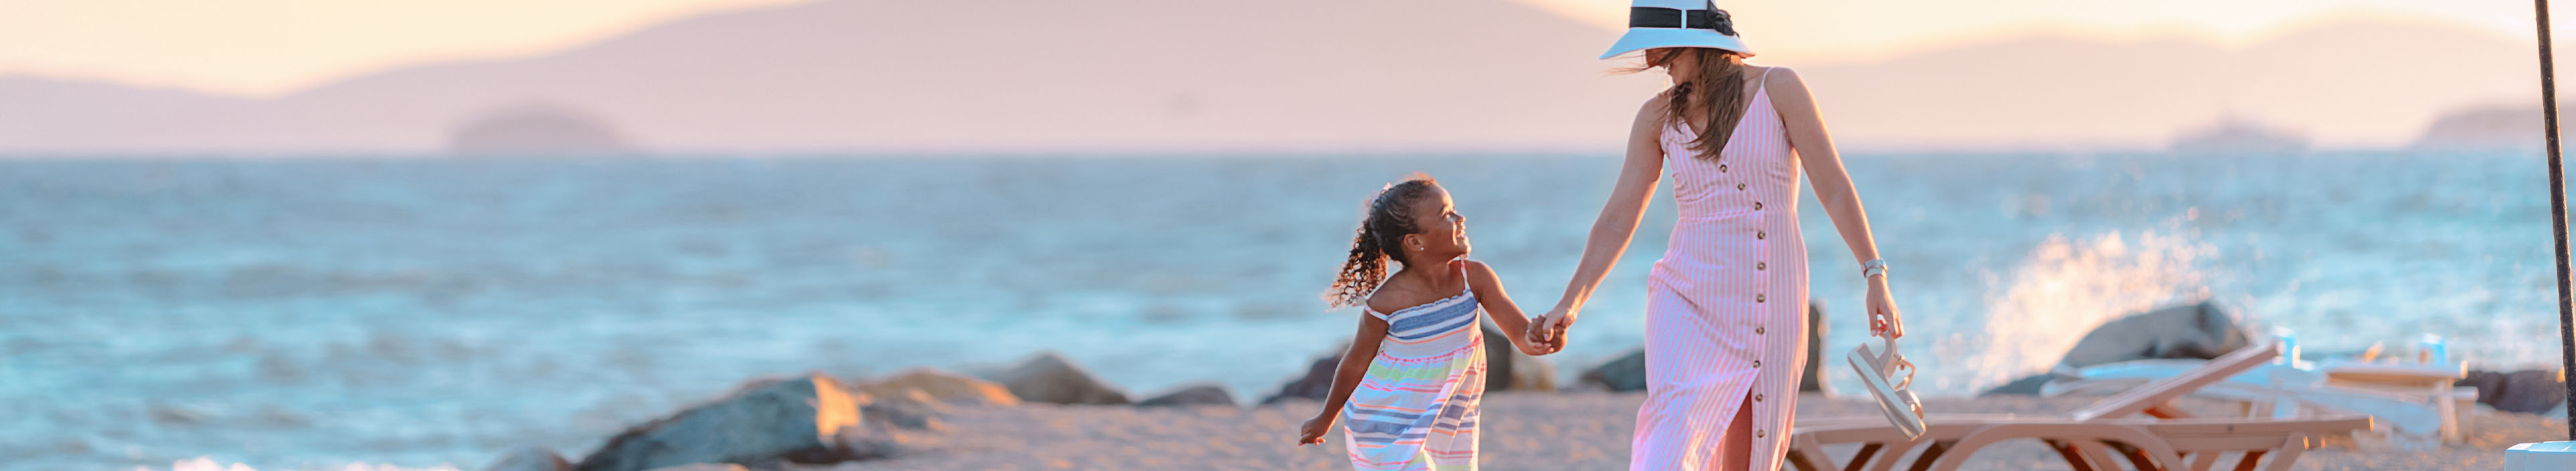 Frau und Kind laufen Hand in Hand am Strand zwischen Liegen und Sonnenschirmen auf Zypern